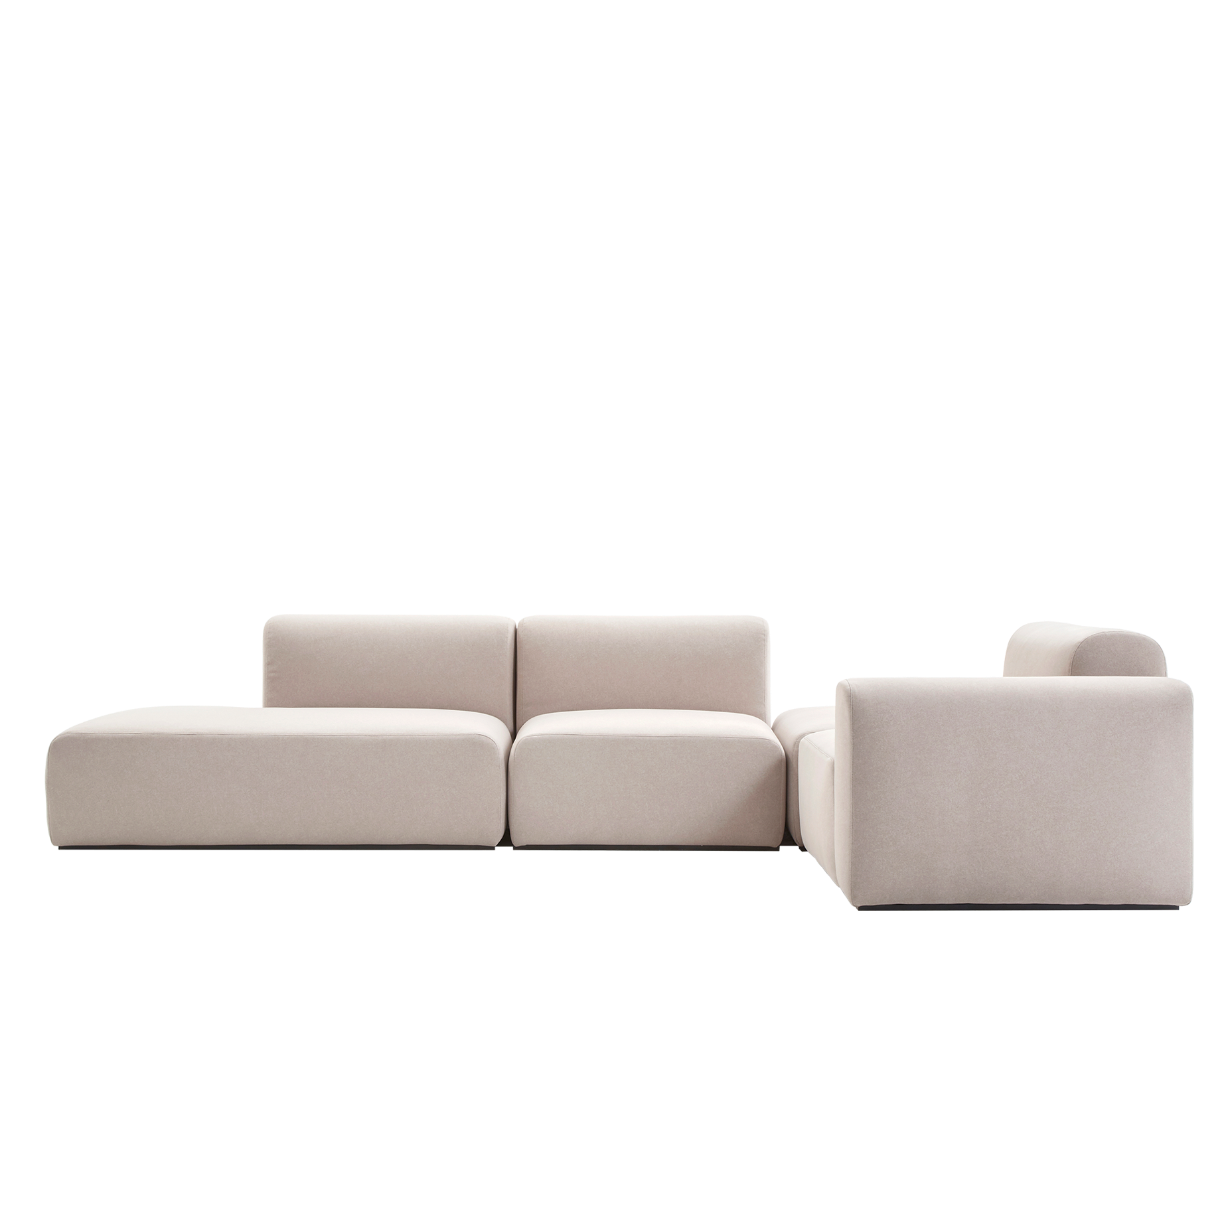 (주)도이치  DOICH ® Aquaclean PEN3 modular couch sofa  도이치 Pen3  4인 카우치 소파 ( 카우치+1인+1.5인) ) + 스툴 /(스페인 아쿠아클린)  [3주 주문제작]